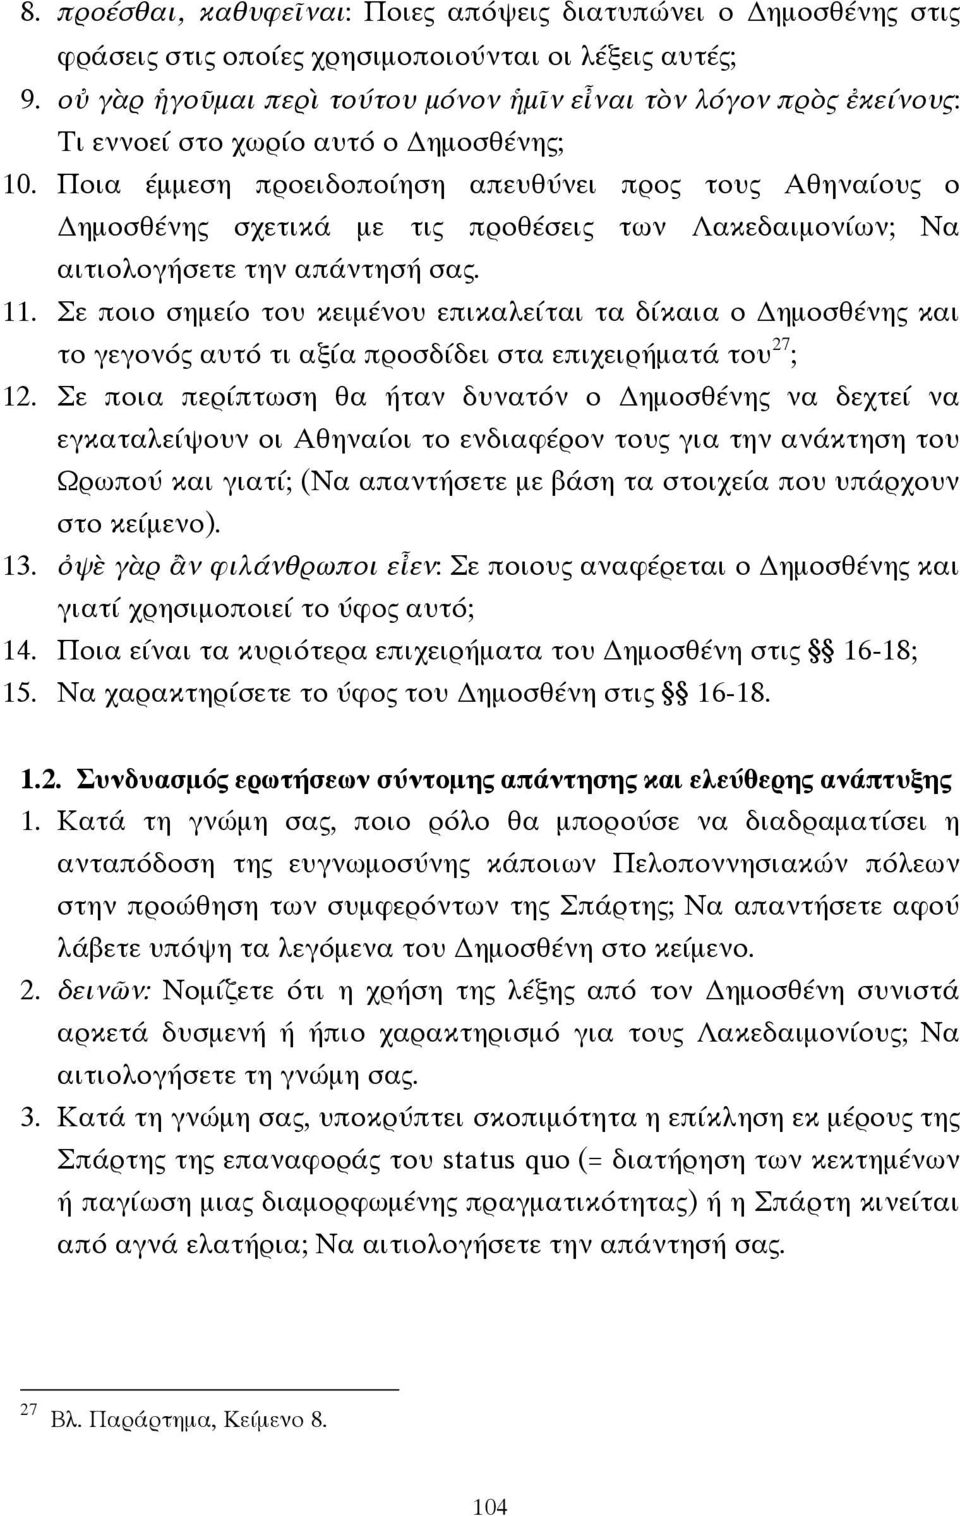 Ποια έµµεση προειδοποίηση απευθύνει προς τους Αθηναίους ο ηµοσθένης σχετικά µε τις προθέσεις των Λακεδαιµονίων; Να αιτιολογήσετε την απάντησή σας. 11.